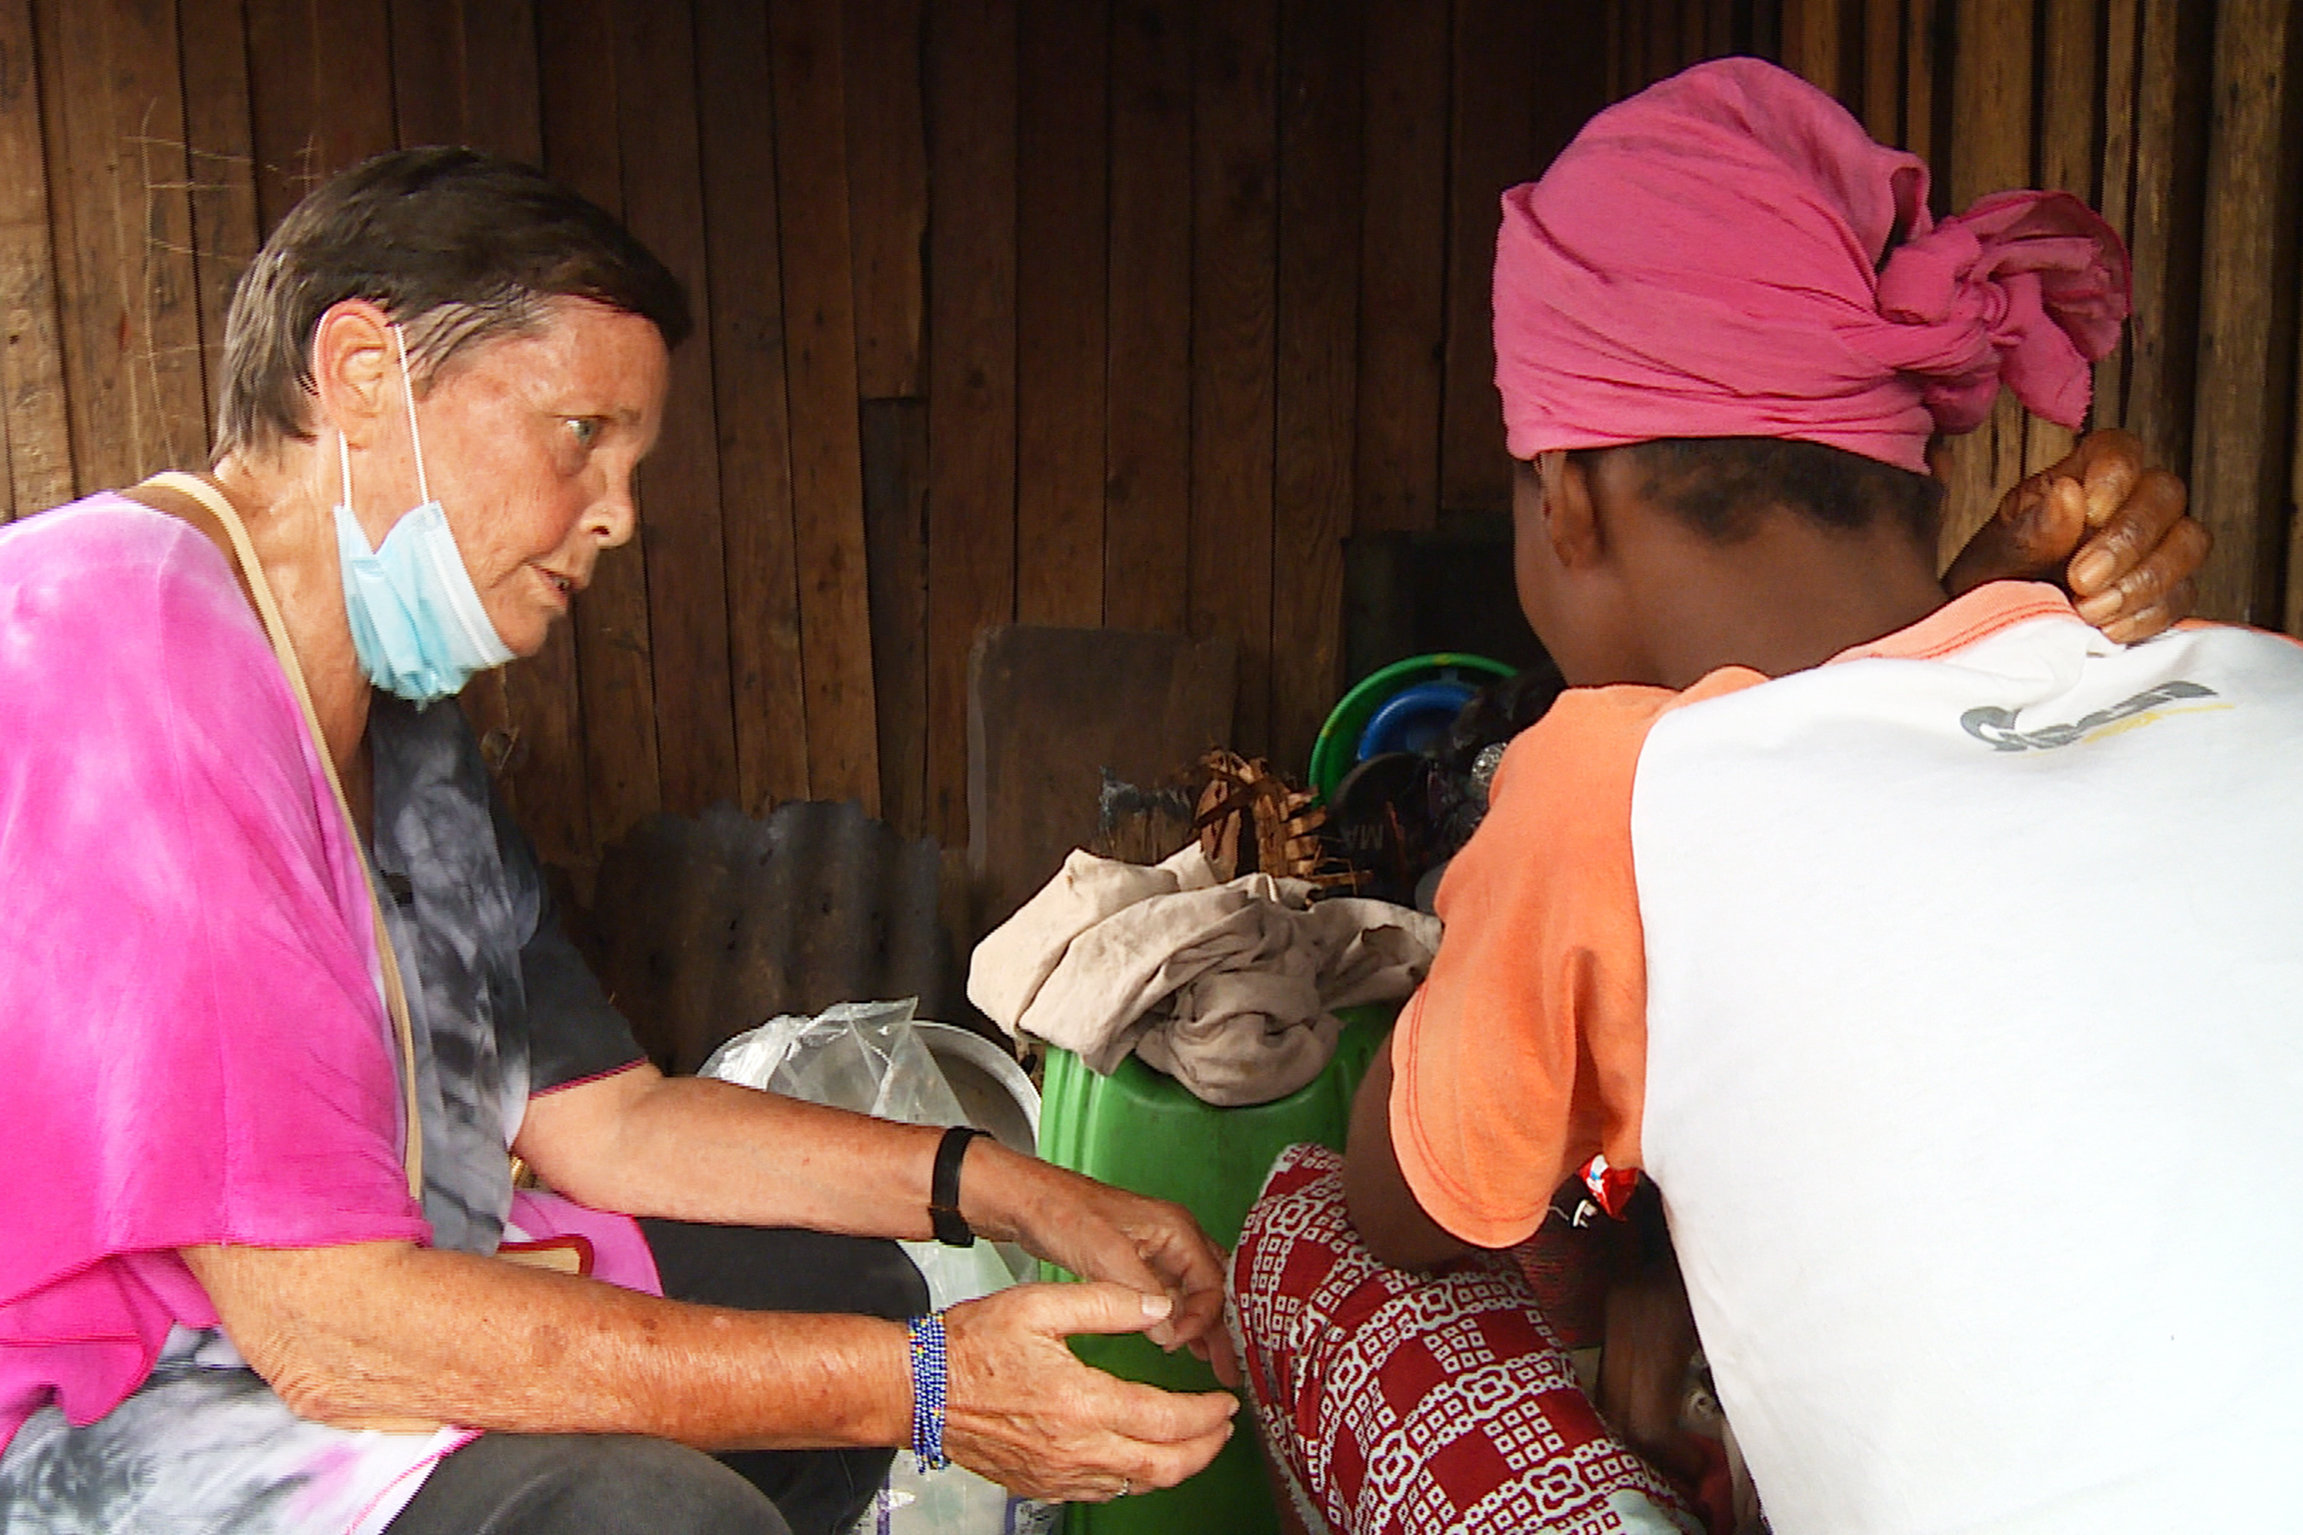 Reporter Lotti Latrous - Ein Leben für die Armen Lotti Latrous versucht im Slum von Abidjan einer kranken Frau zu helfen.